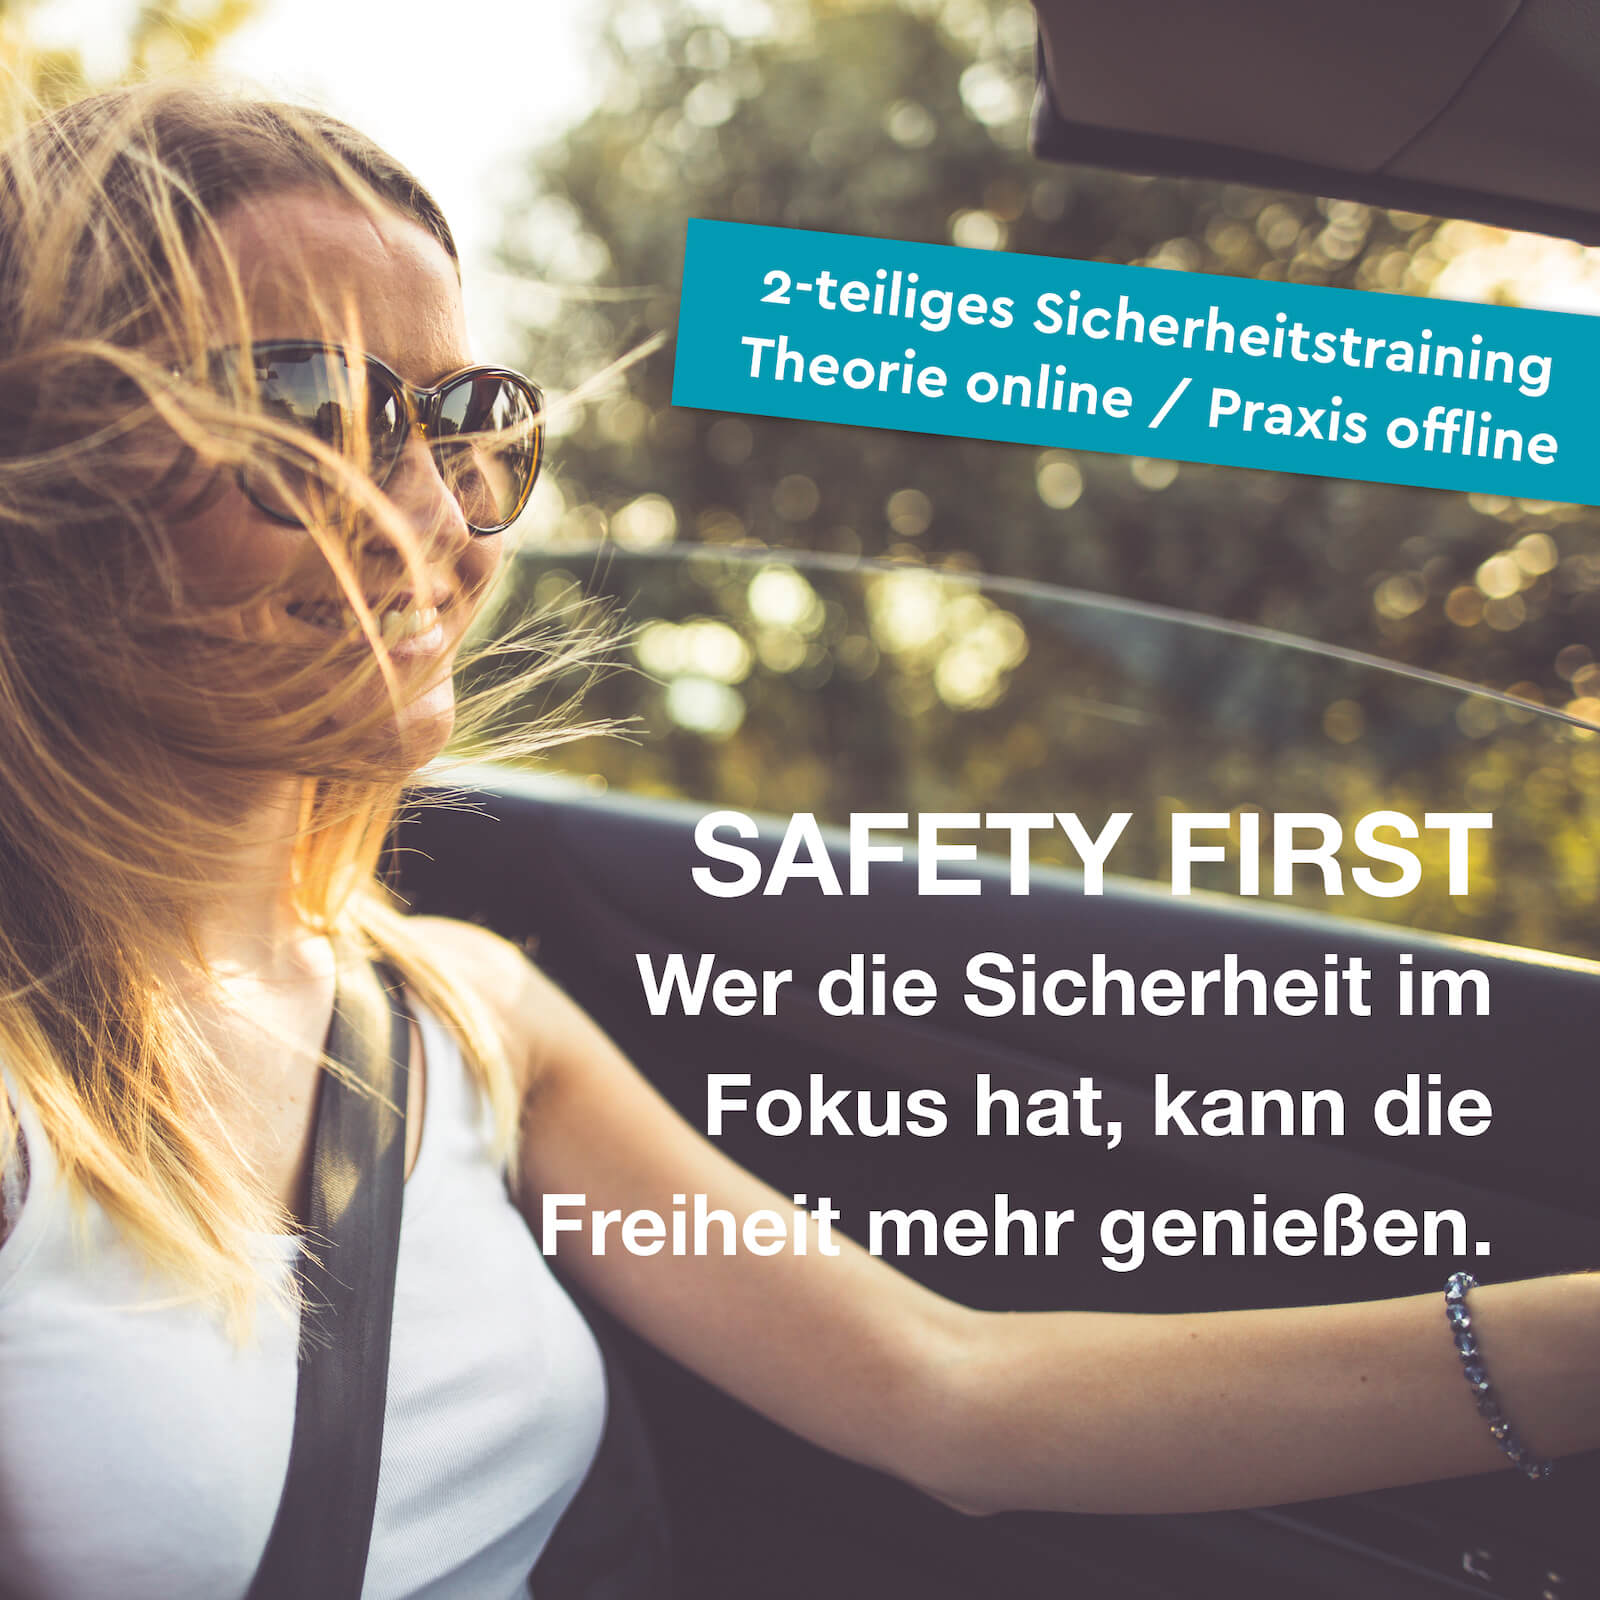 Safety First online Sicherheitsschulung für Nannys und Hauspersonal.